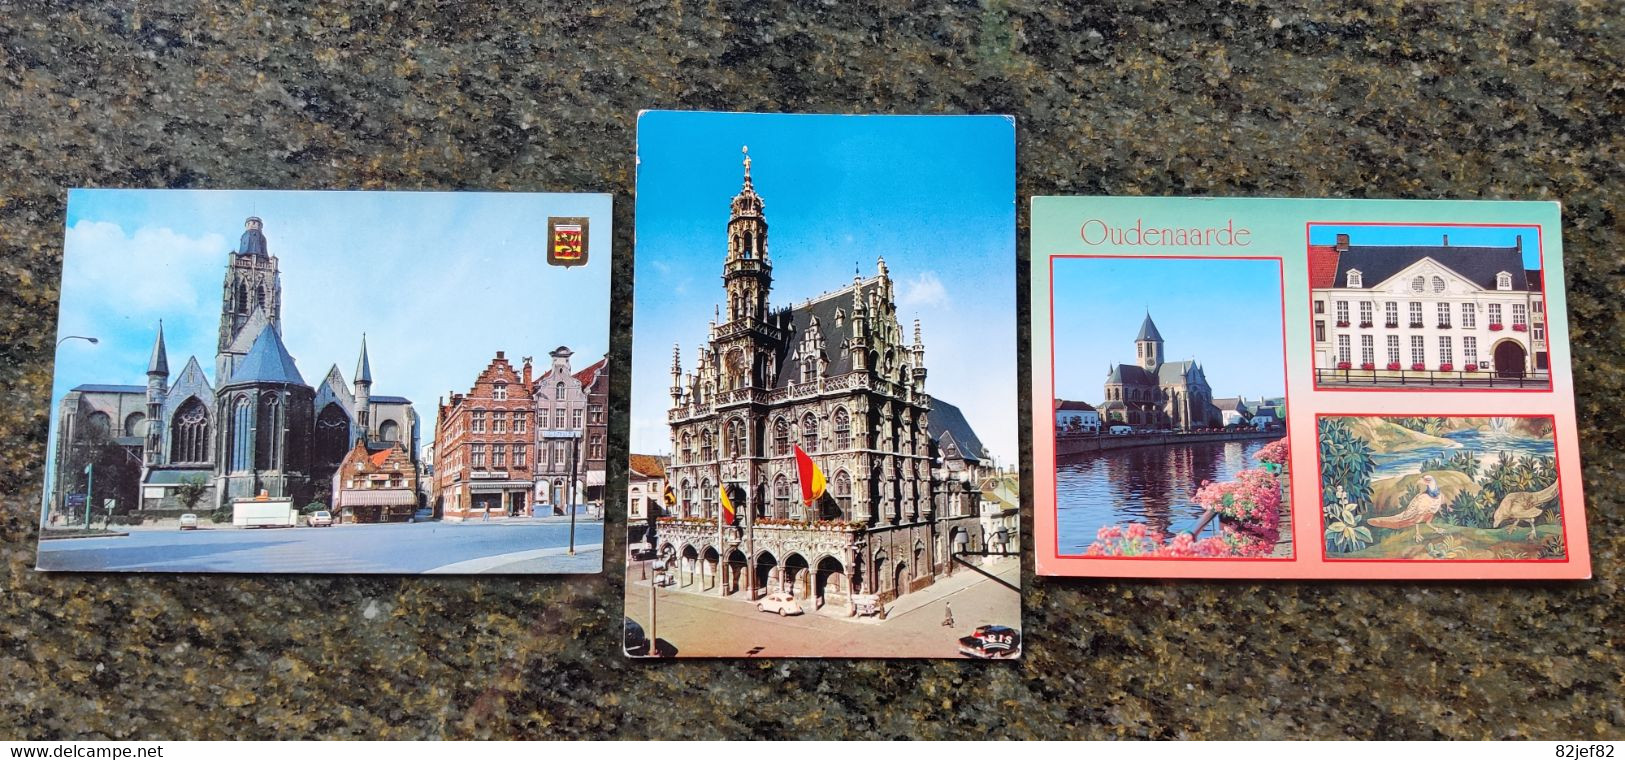 Oudenaarde : 3 Postkaarten - Oudenaarde